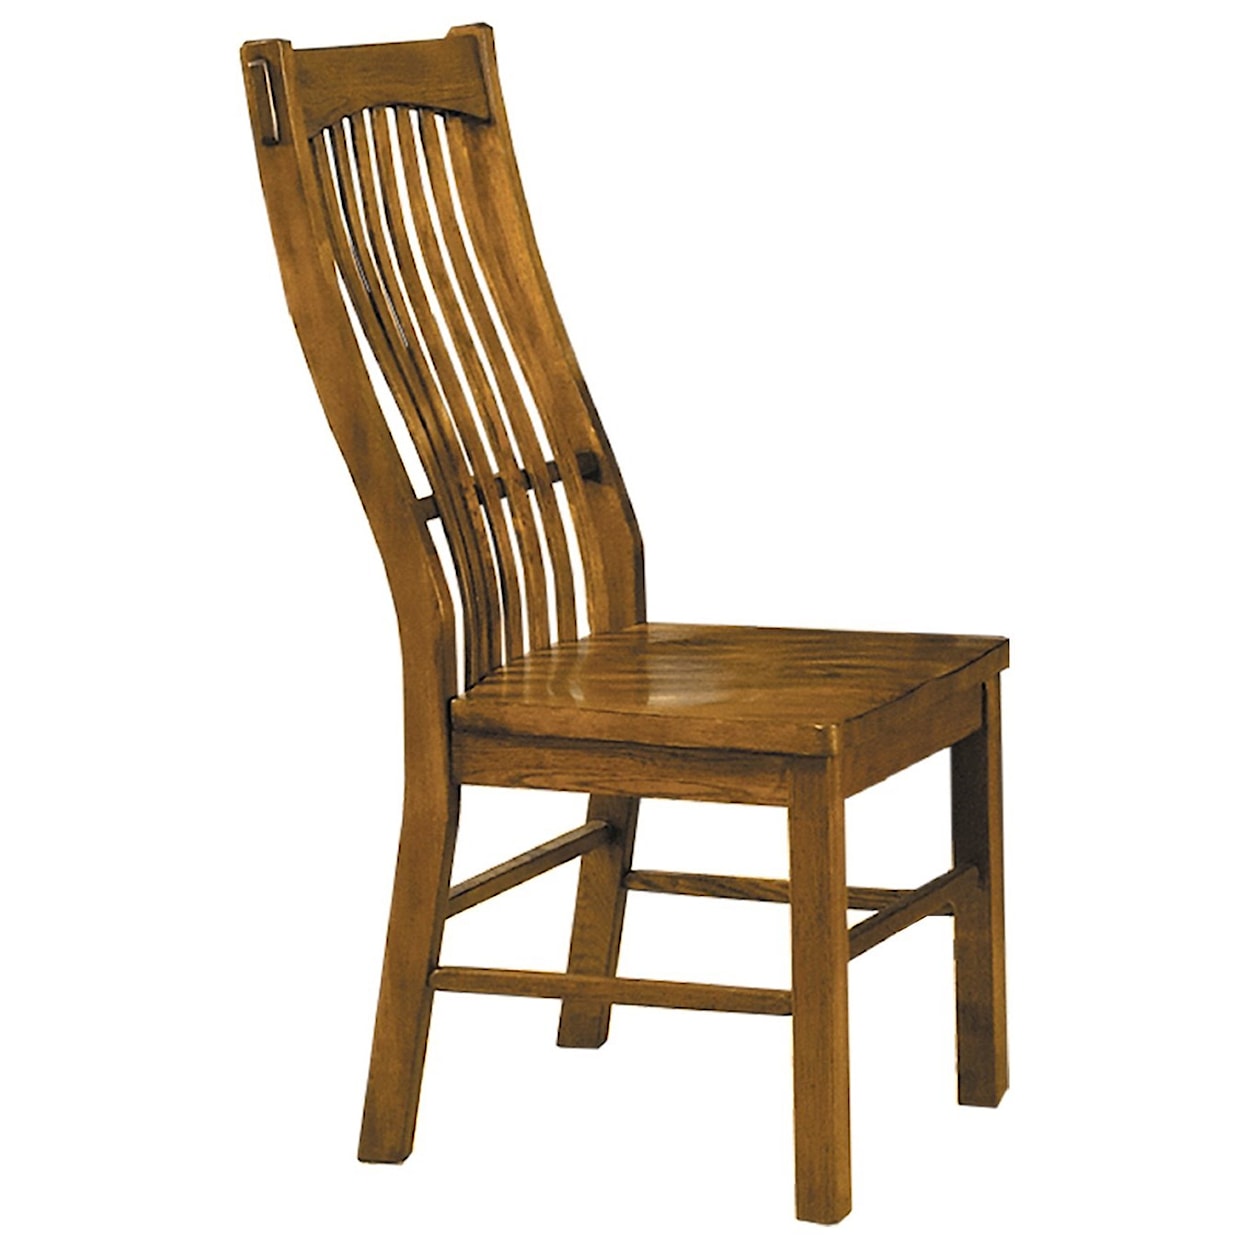 AAmerica Laurelhurst Slatback Dining Chair 